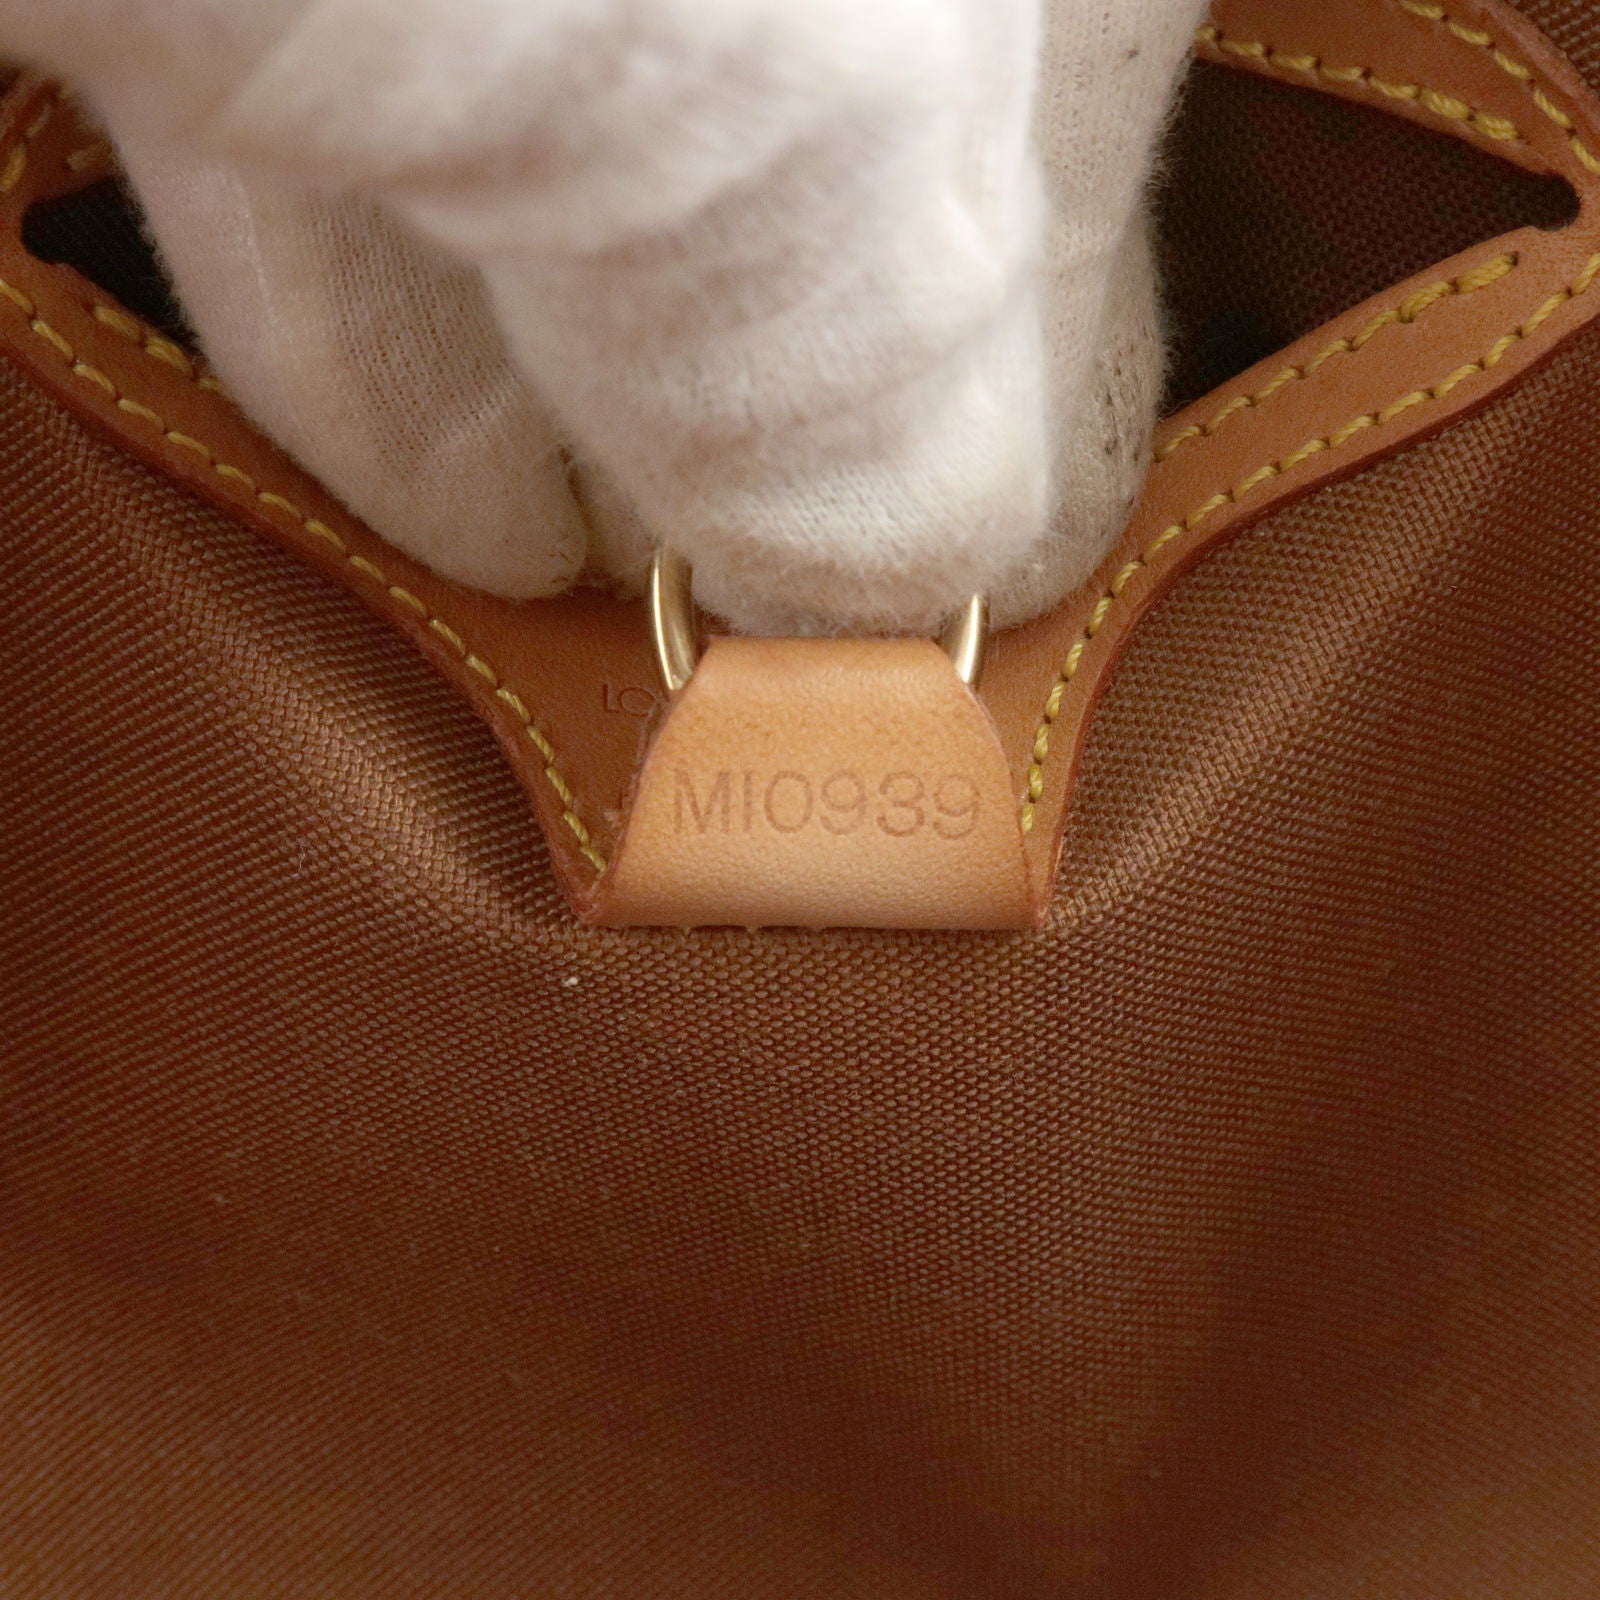 LOUIS VUITTON Handbag M51127 Ellipse PM Monogram canvas Brown Women Us –